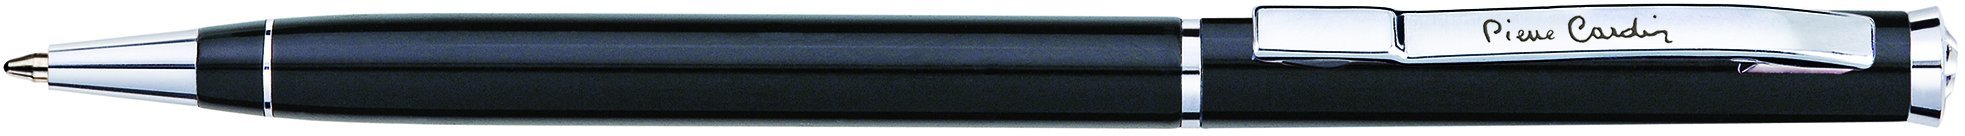 Шариковая ручка Pierre Cardin Gamme черный лак, сталь, хром